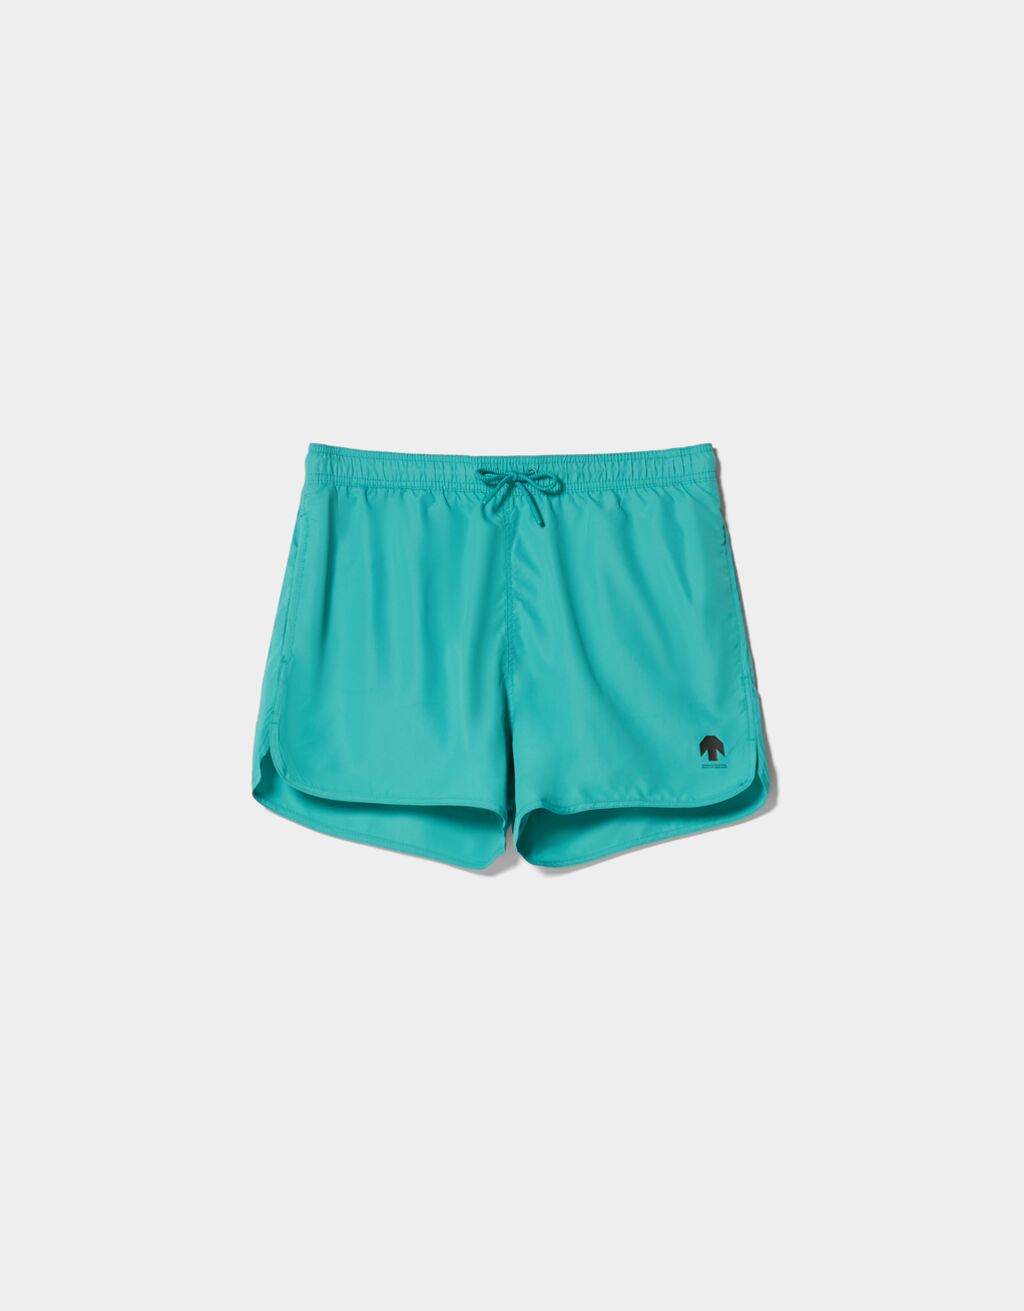 ベルシュカ メンズ ハーフパンツ・ショーツ 水着 Bershka swim shorts in light blue aCuzHjFqQK, 水着 -  windowrevival.co.nz